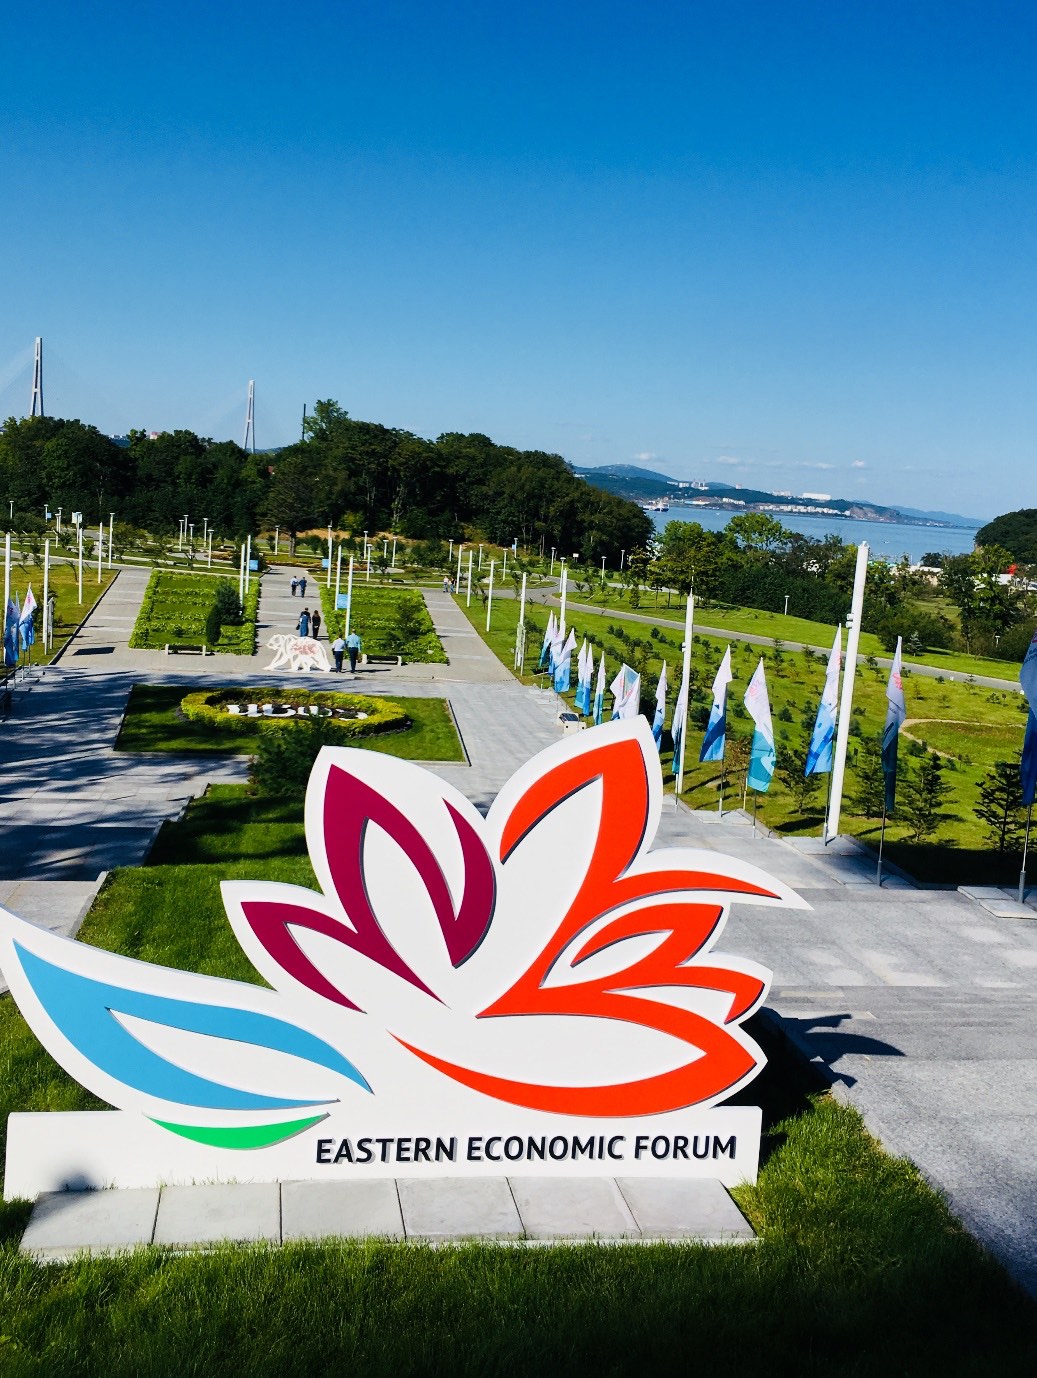 Национальное конгресс-бюро (НКБ) выступило партнером и приняло участие в деловой программе Восточного экономического форума 2018.